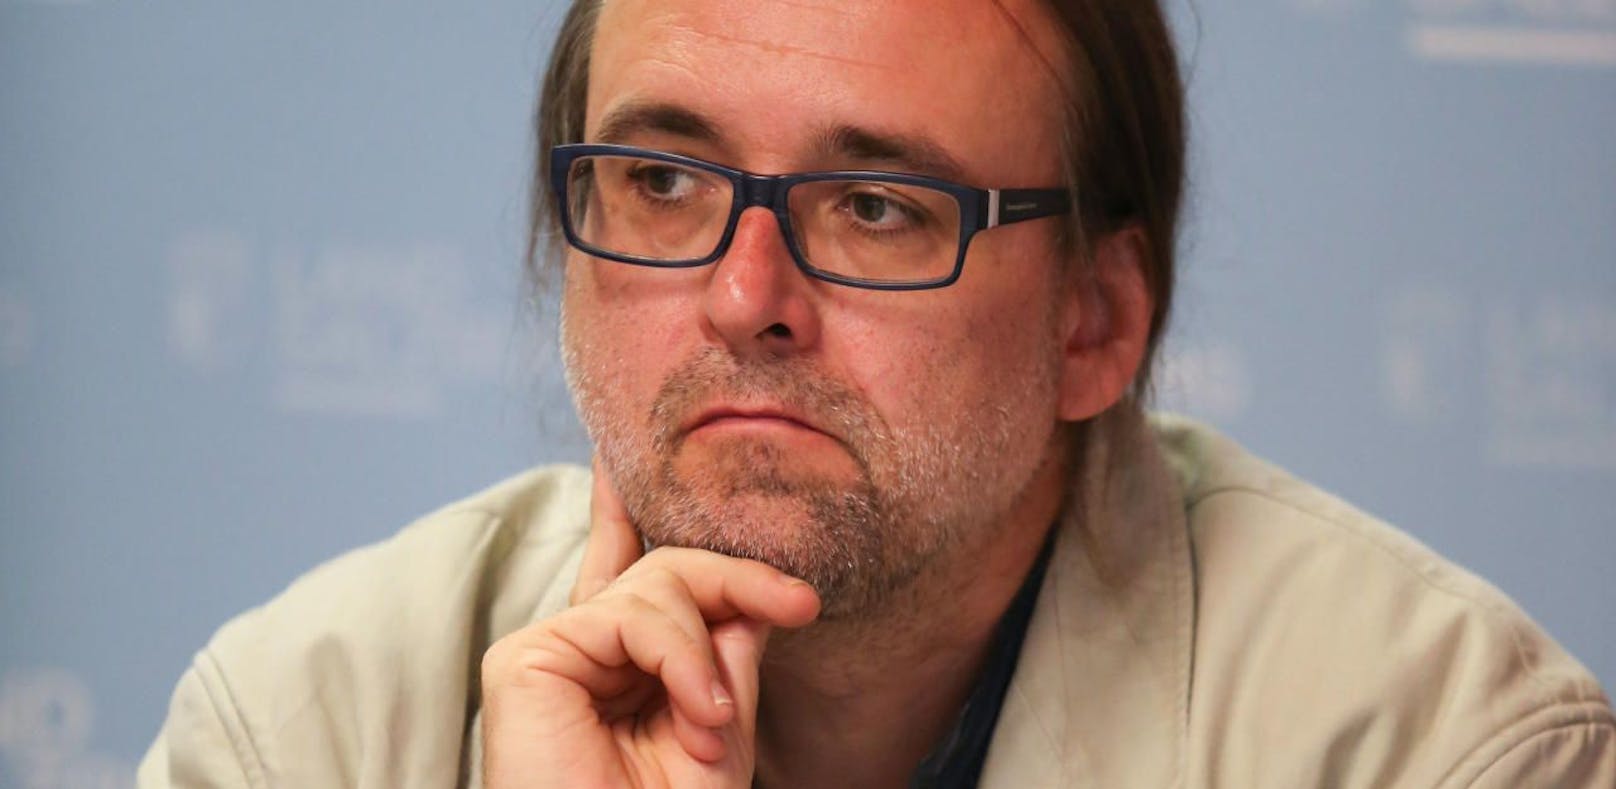 Rechtsexperte Christoph Riedl von der Diakonie wurde nach Kritik an Asylverfahren angezeigt.